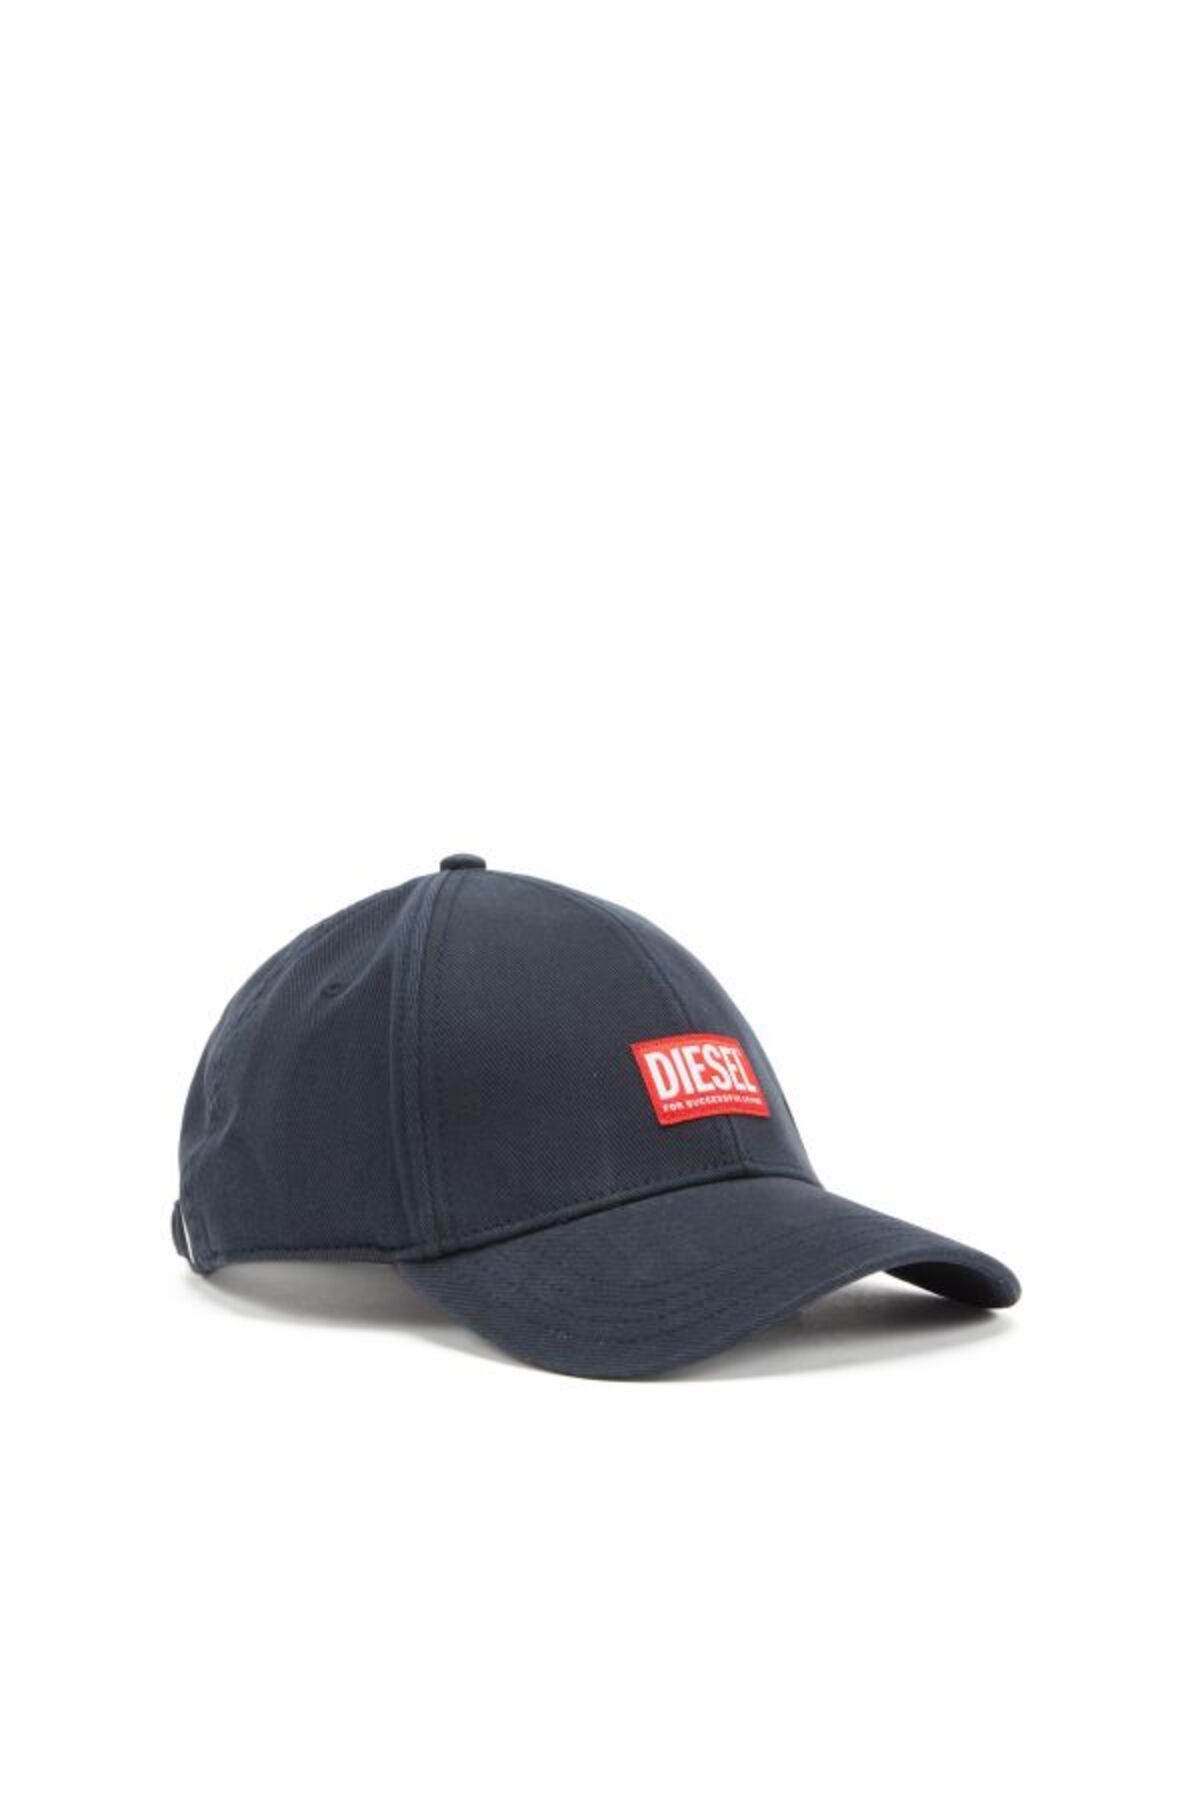 Diesel Erkek Logo Detaylı Mavi Şapka